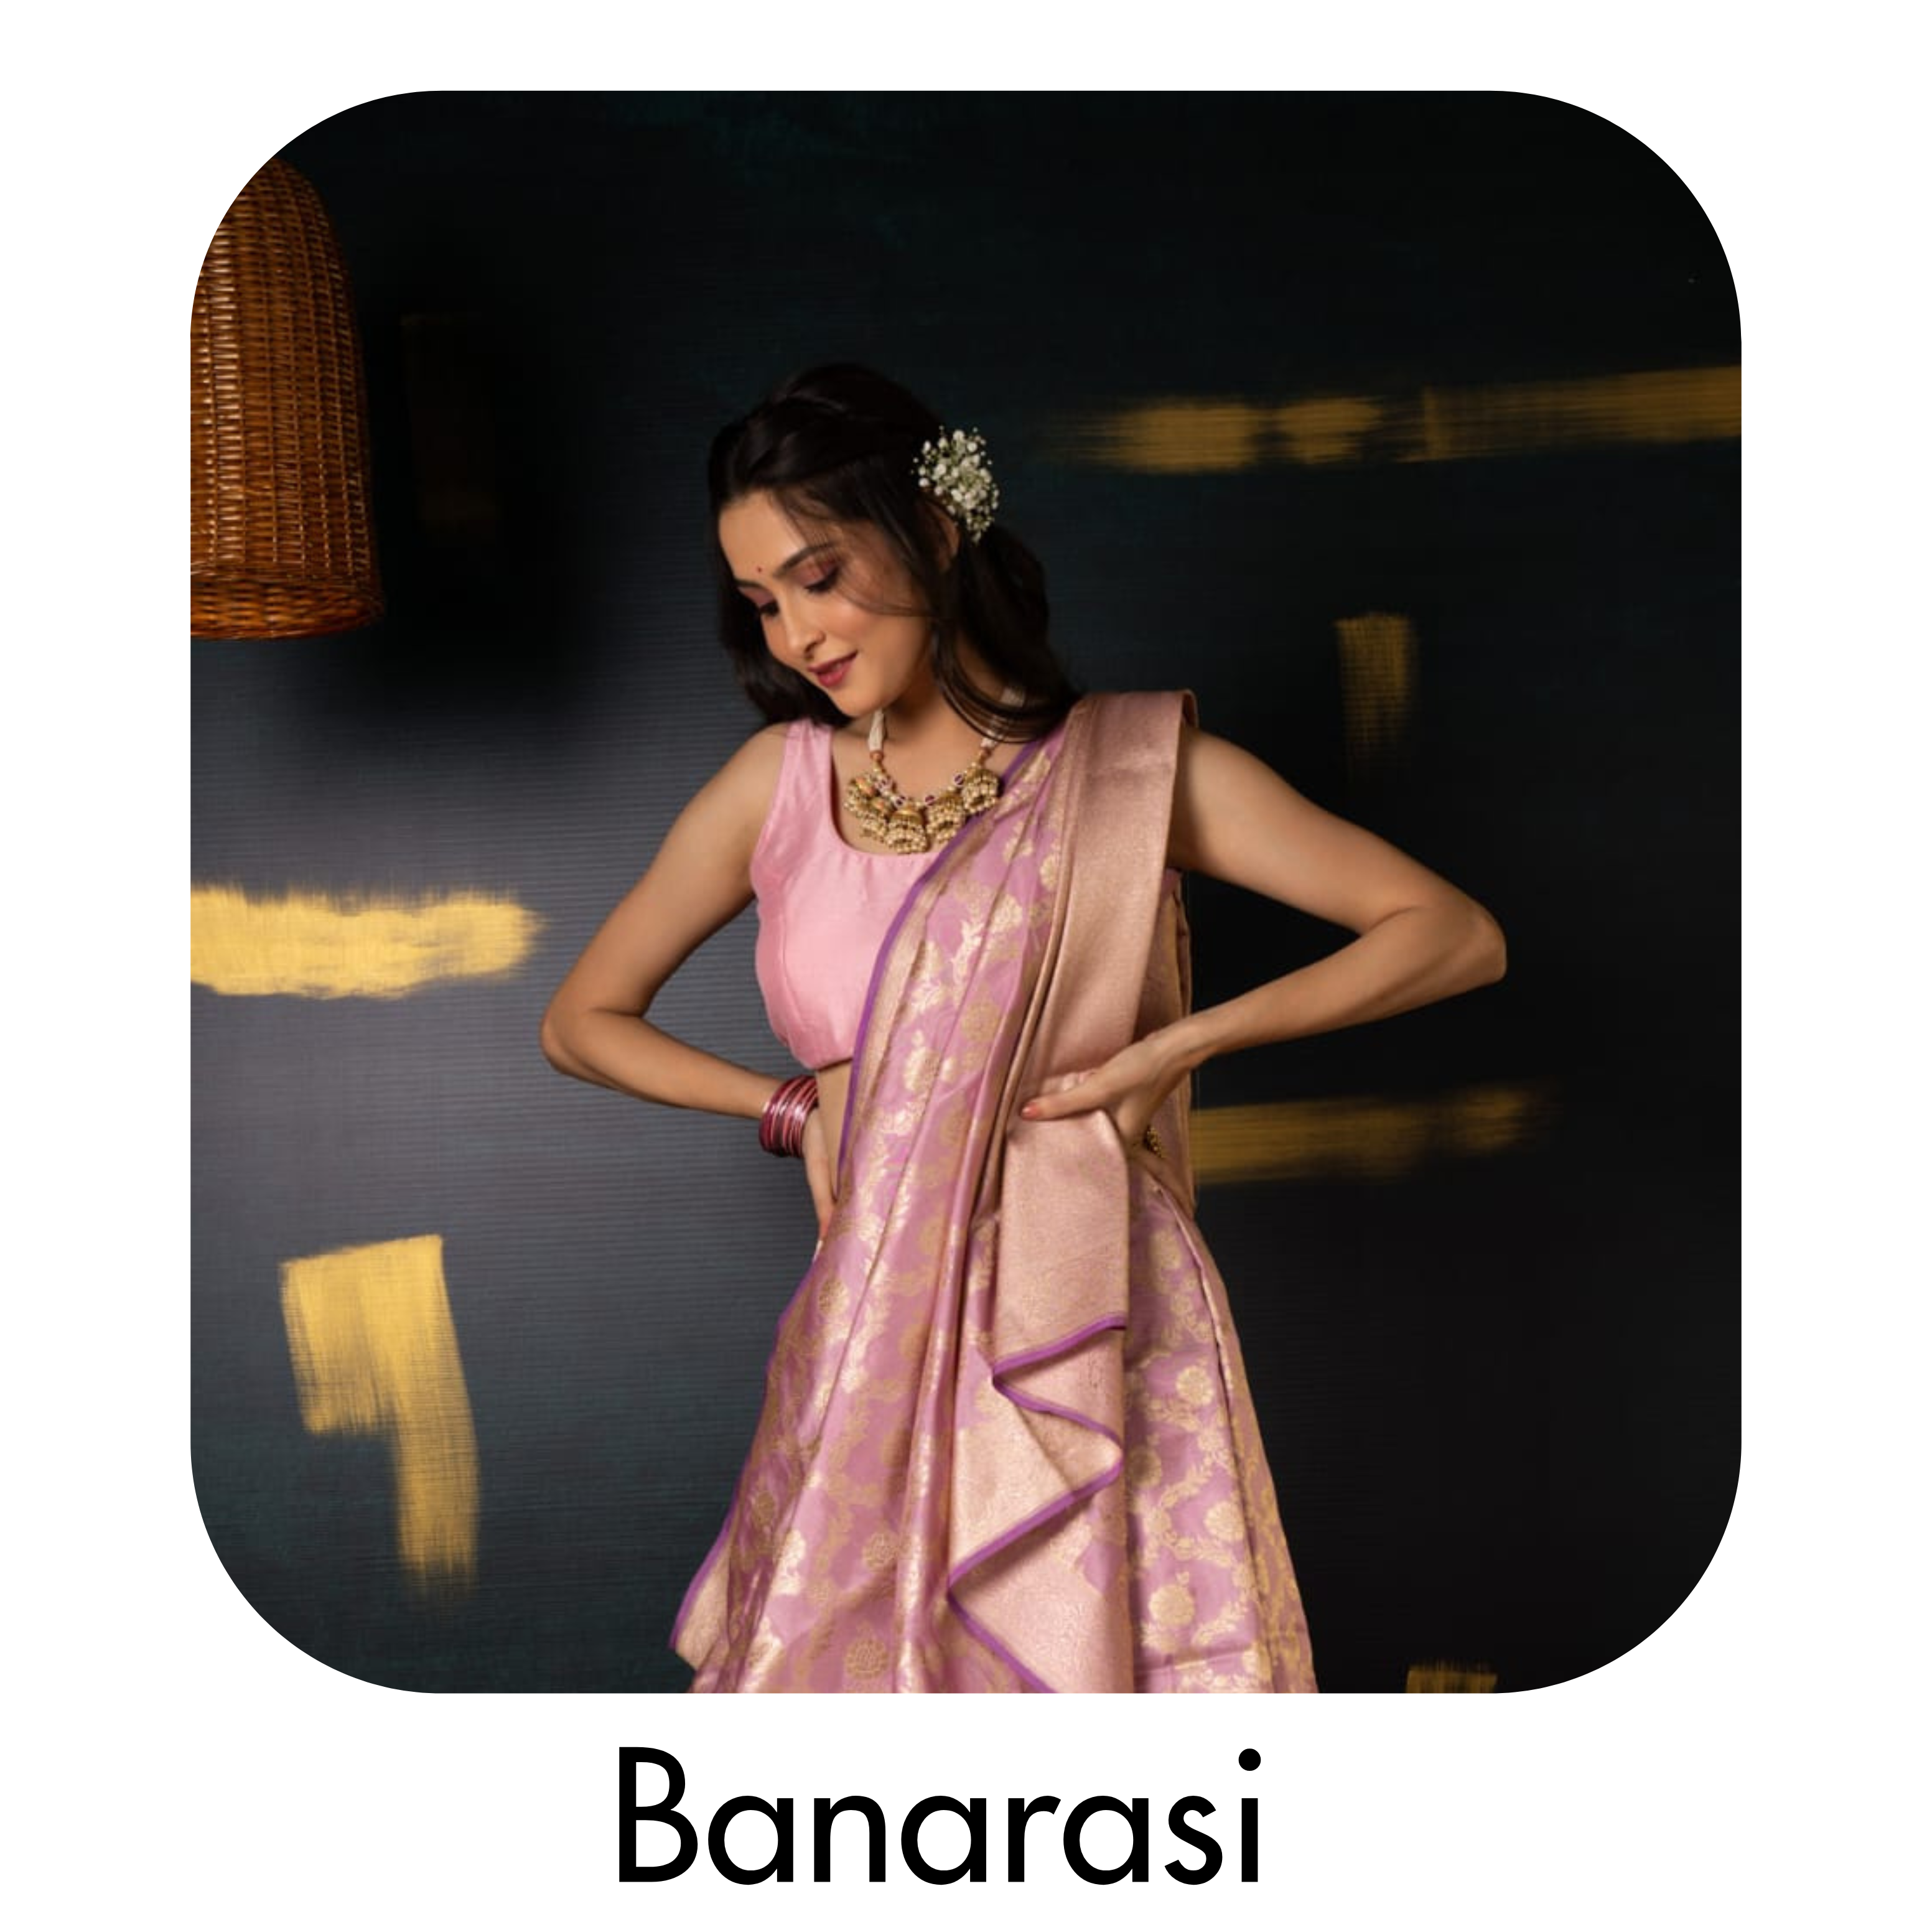 Banarasi